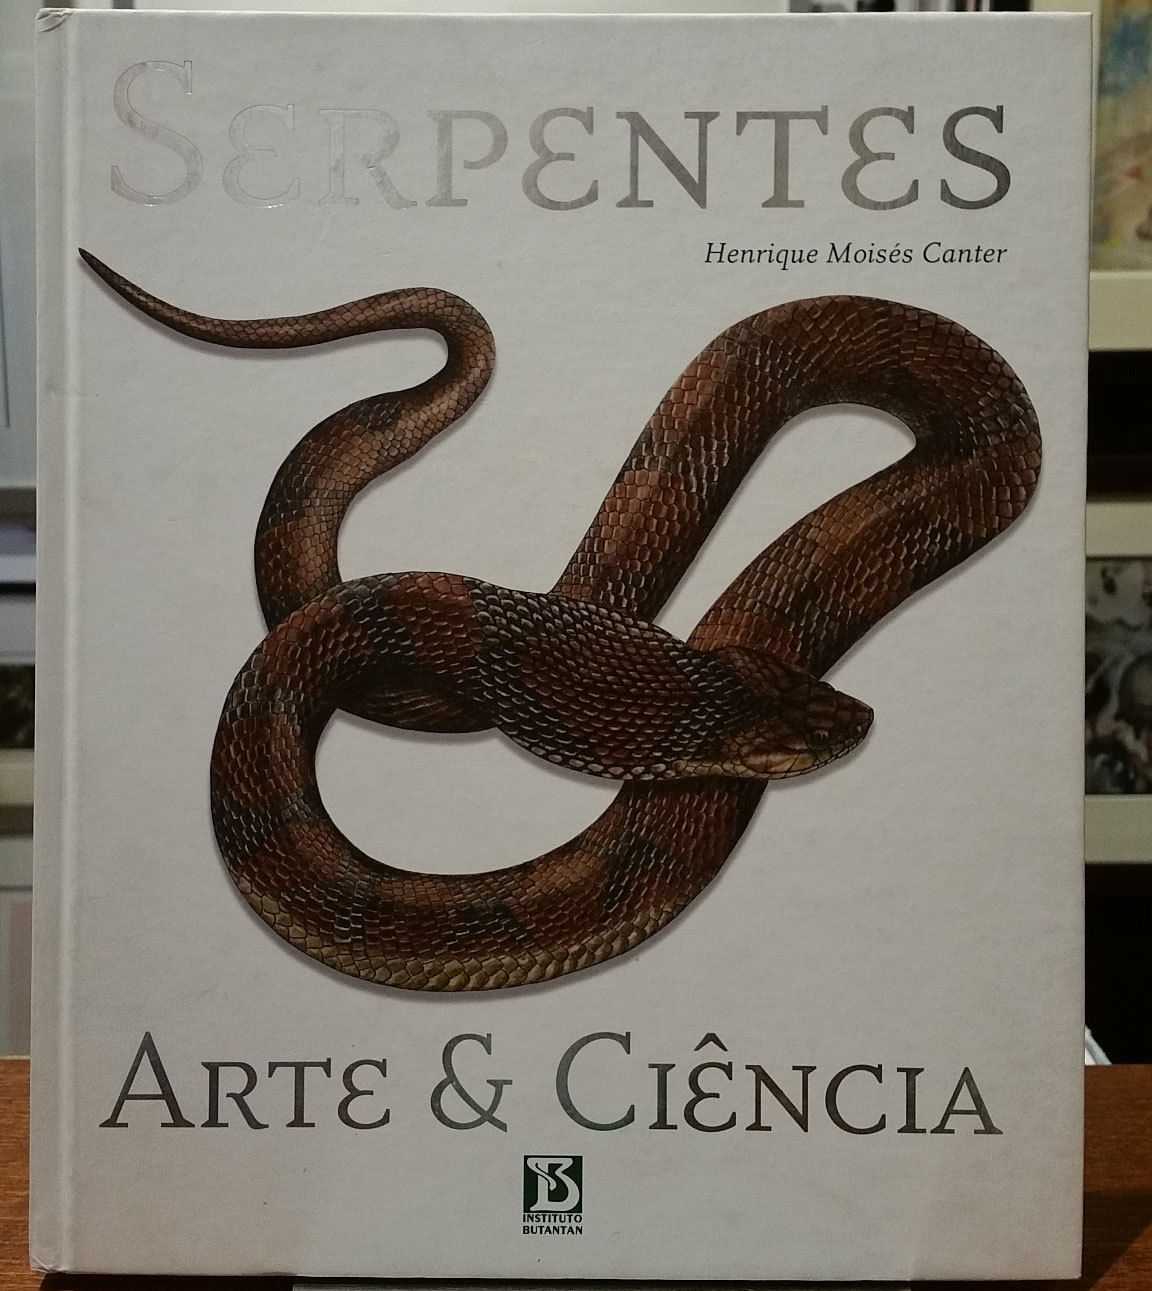 Henrique Moises Canter - Serpentes: Arte & Ciencia / Snakes: Art & Science